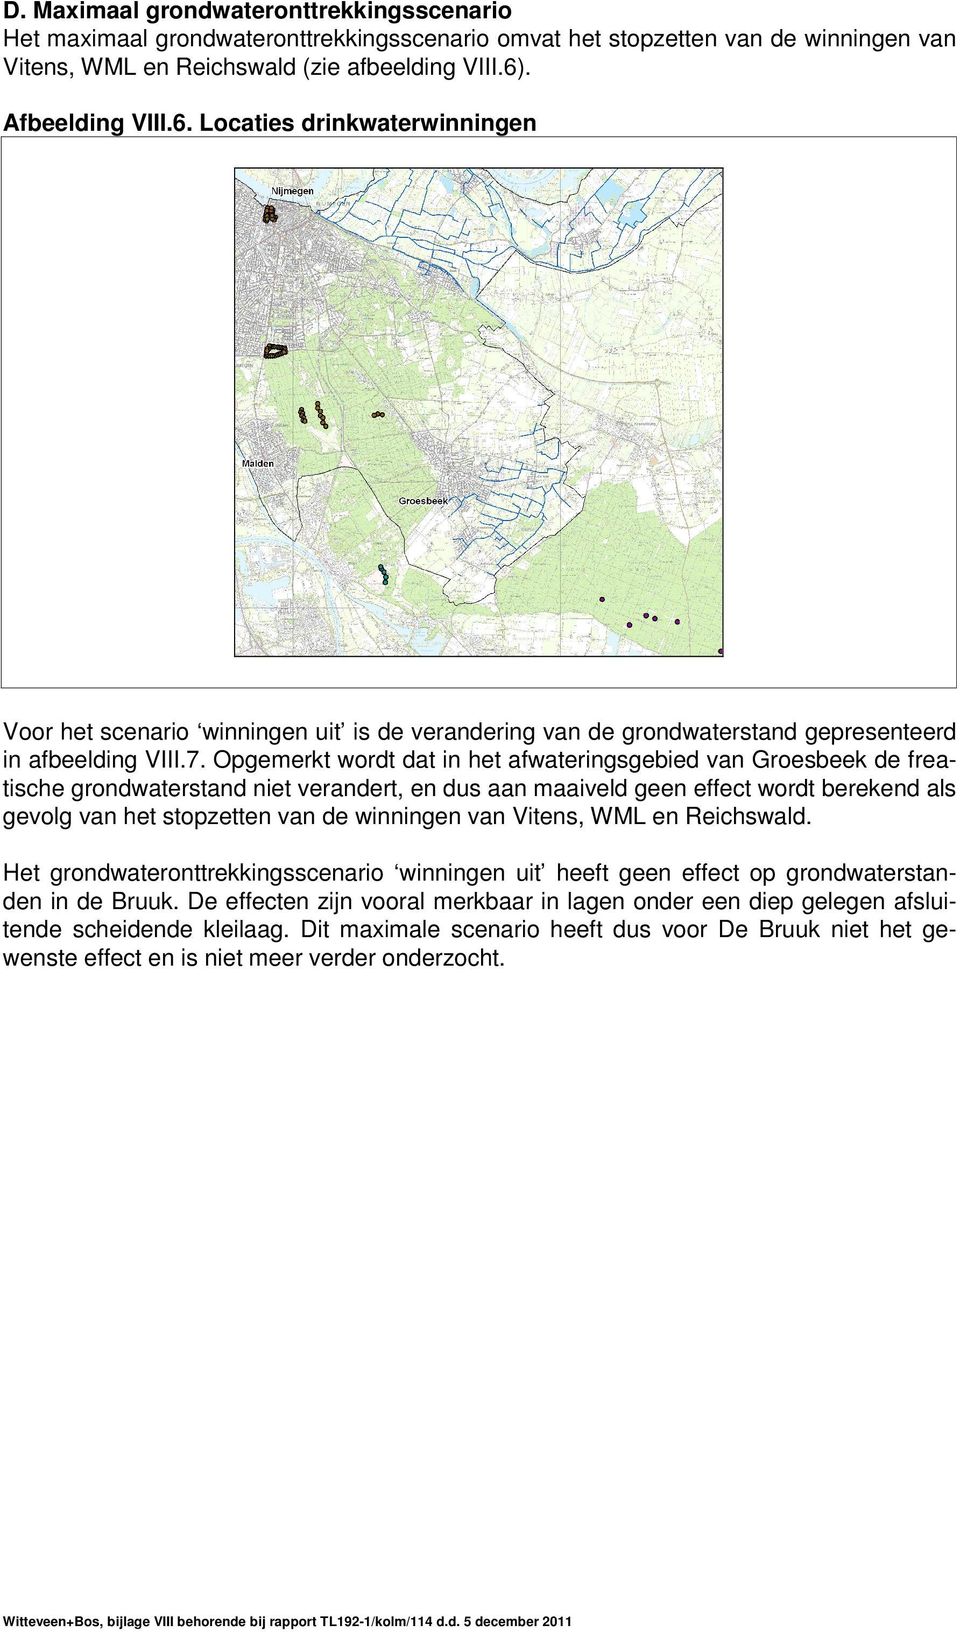 Opgemerkt wordt dat in het afwateringsgebied van Groesbeek de freatische grondwaterstand niet verandert, en dus aan maaiveld geen effect wordt berekend als gevolg van het stopzetten van de winningen